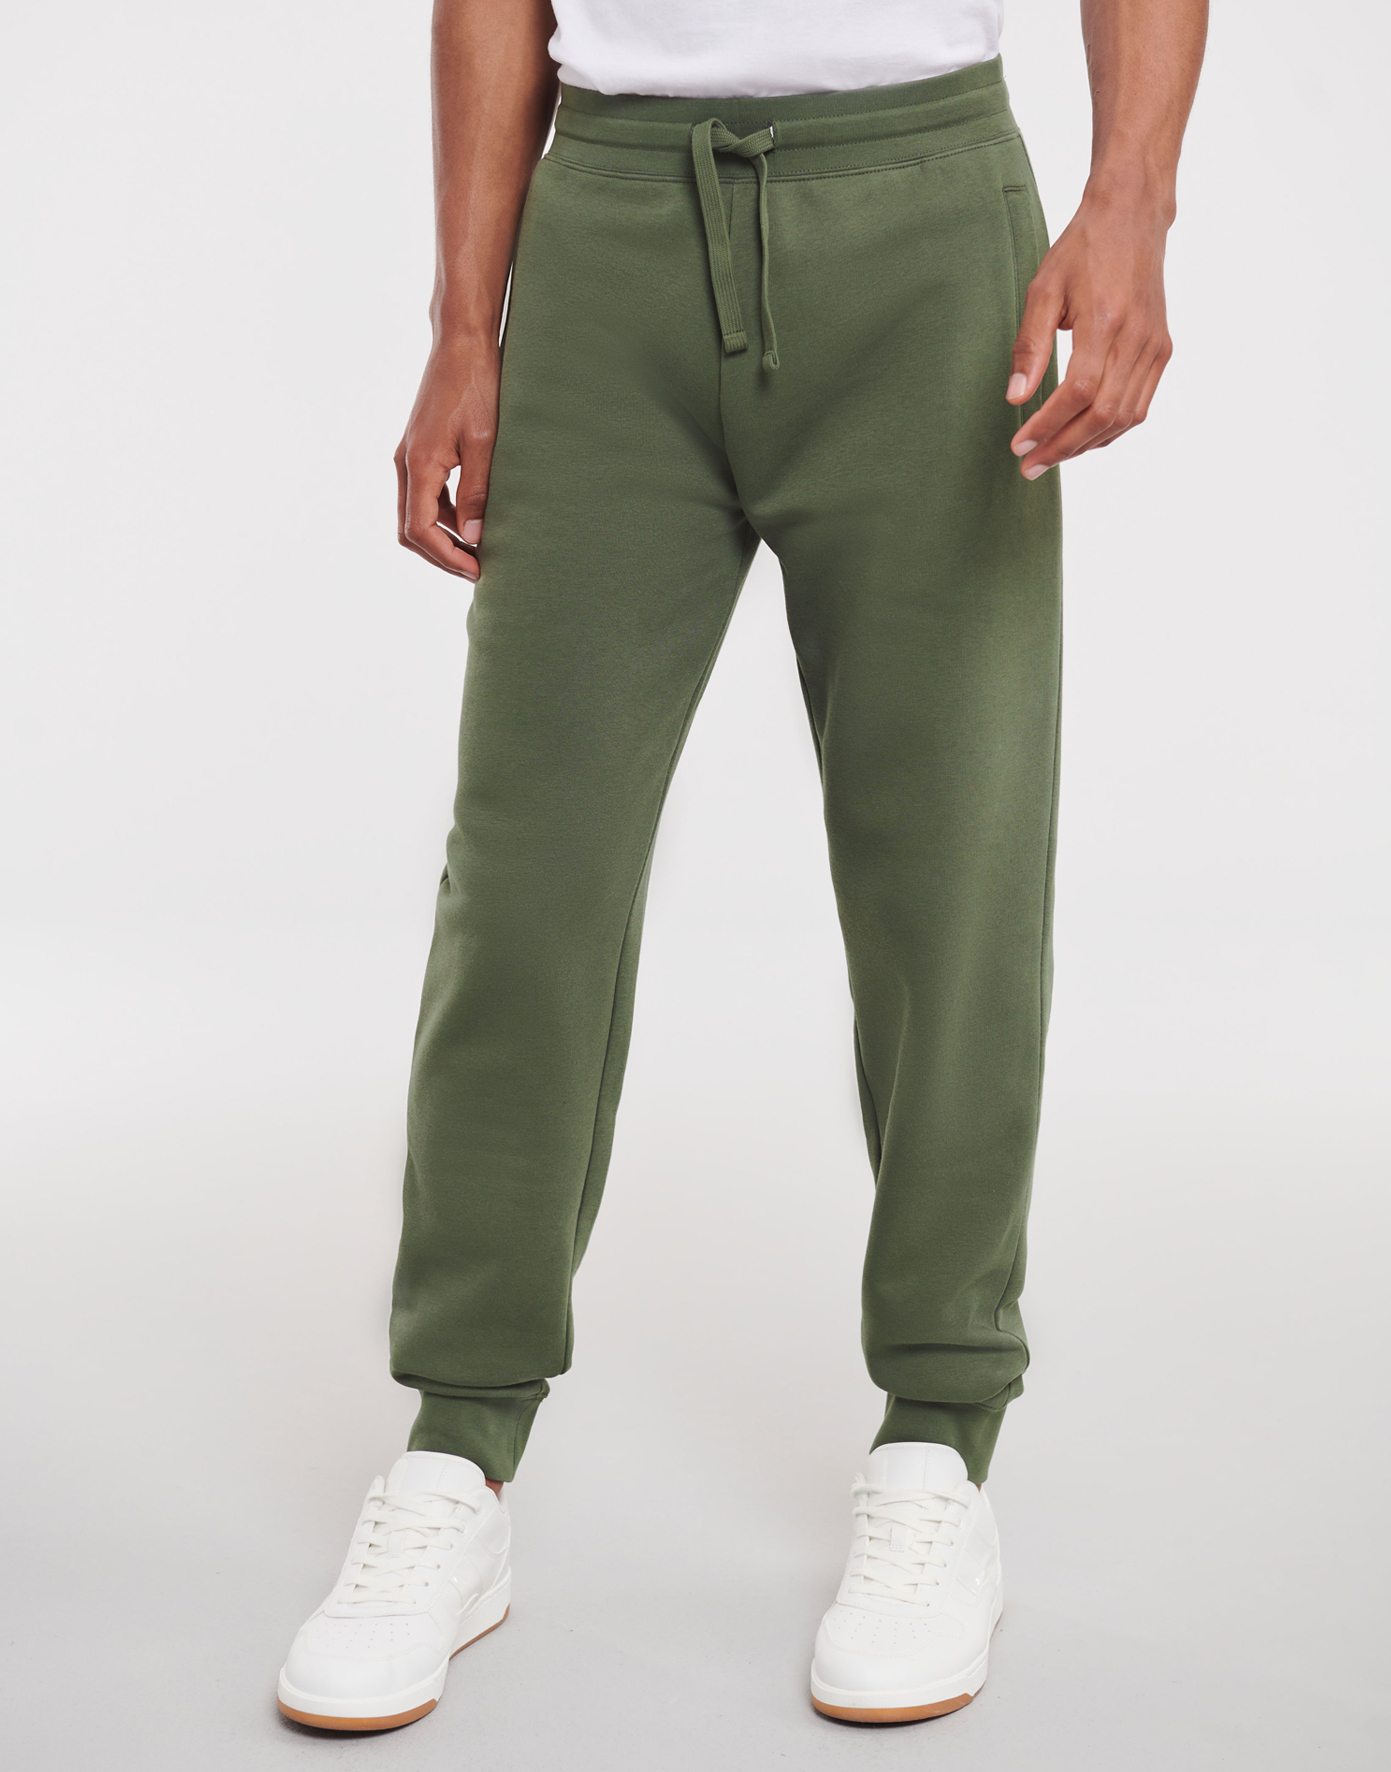 Pánské joggingové kalhoty Velikost: M, Barva: Zelená